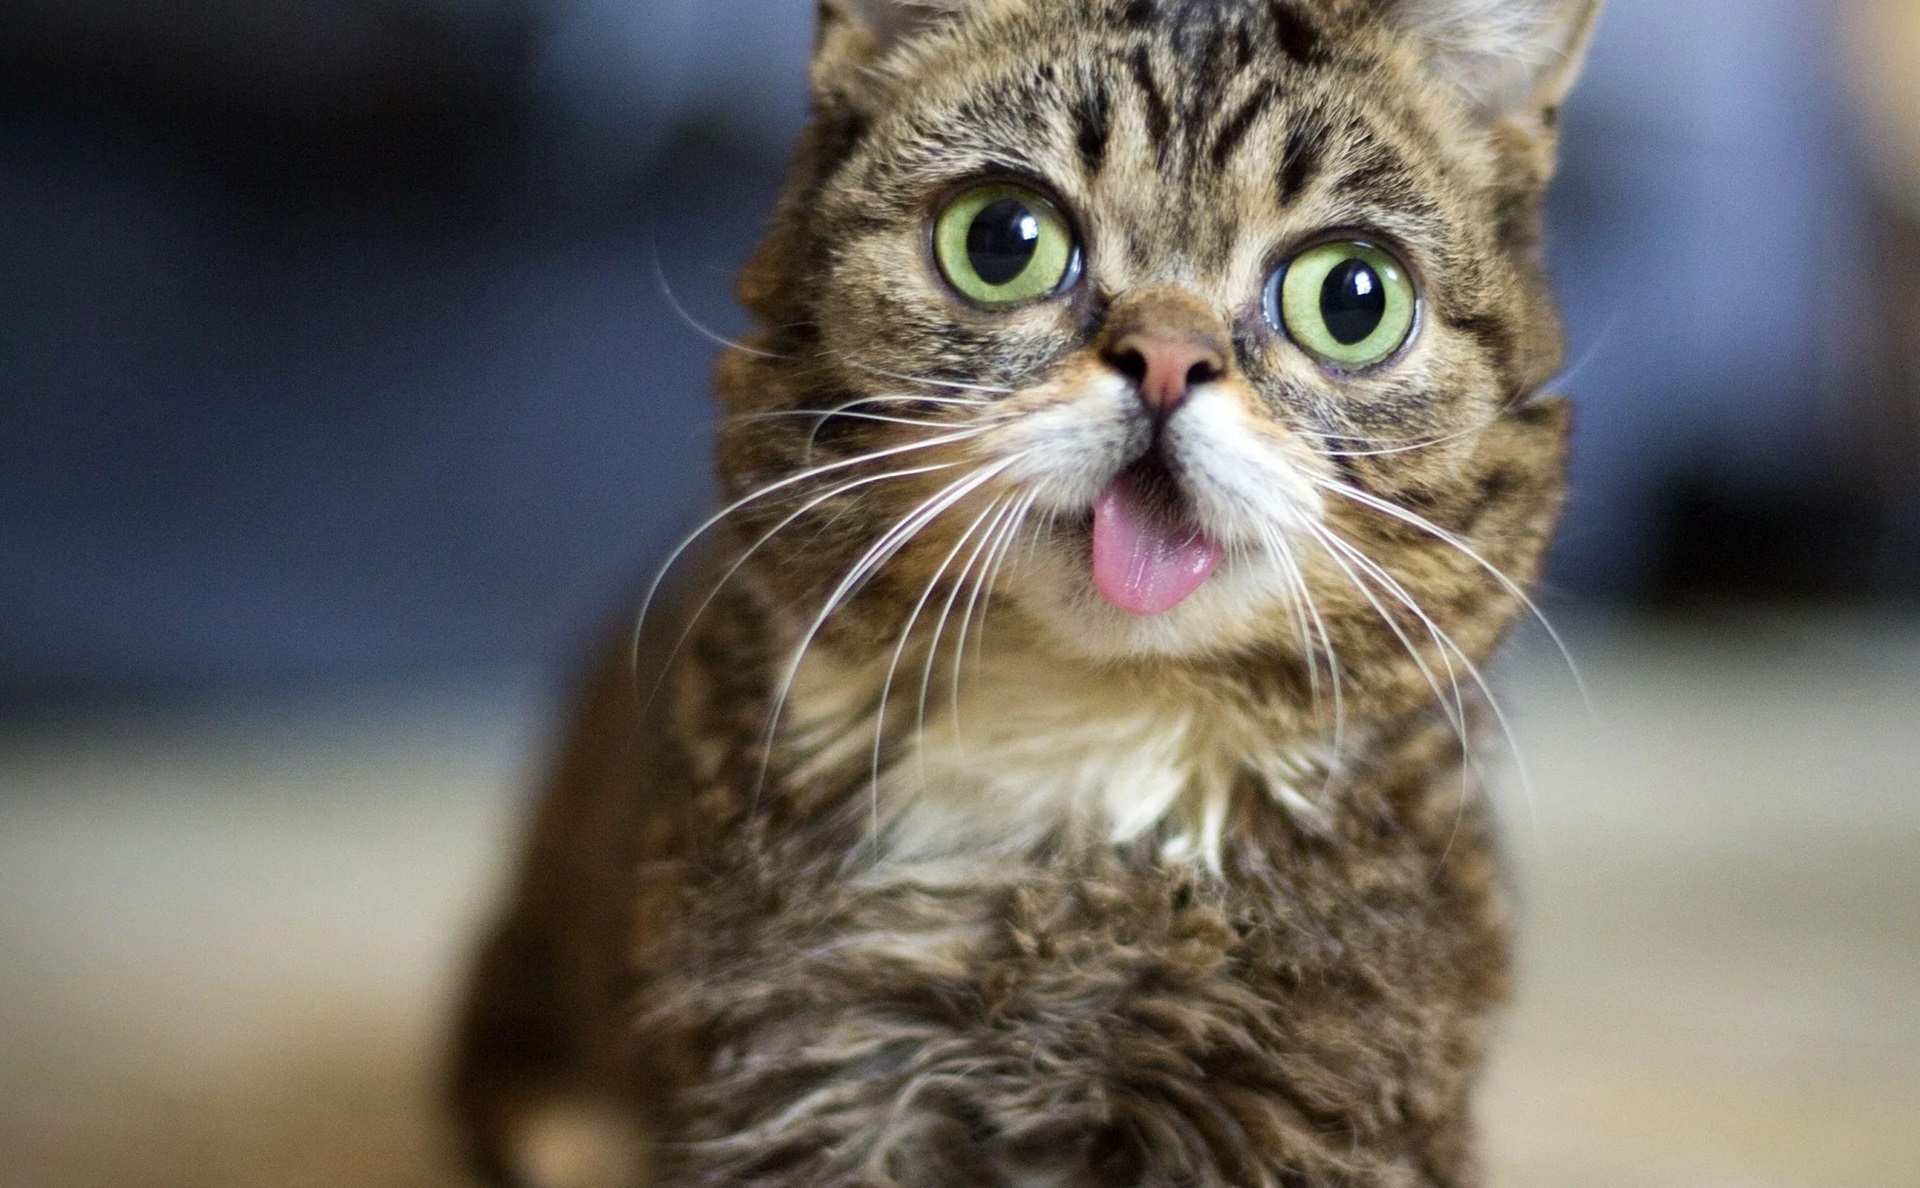 Mèo Lil Bub nhiều dị tật bẩm sinh trở thành nguồn cảm hứng cho hàng triệu người